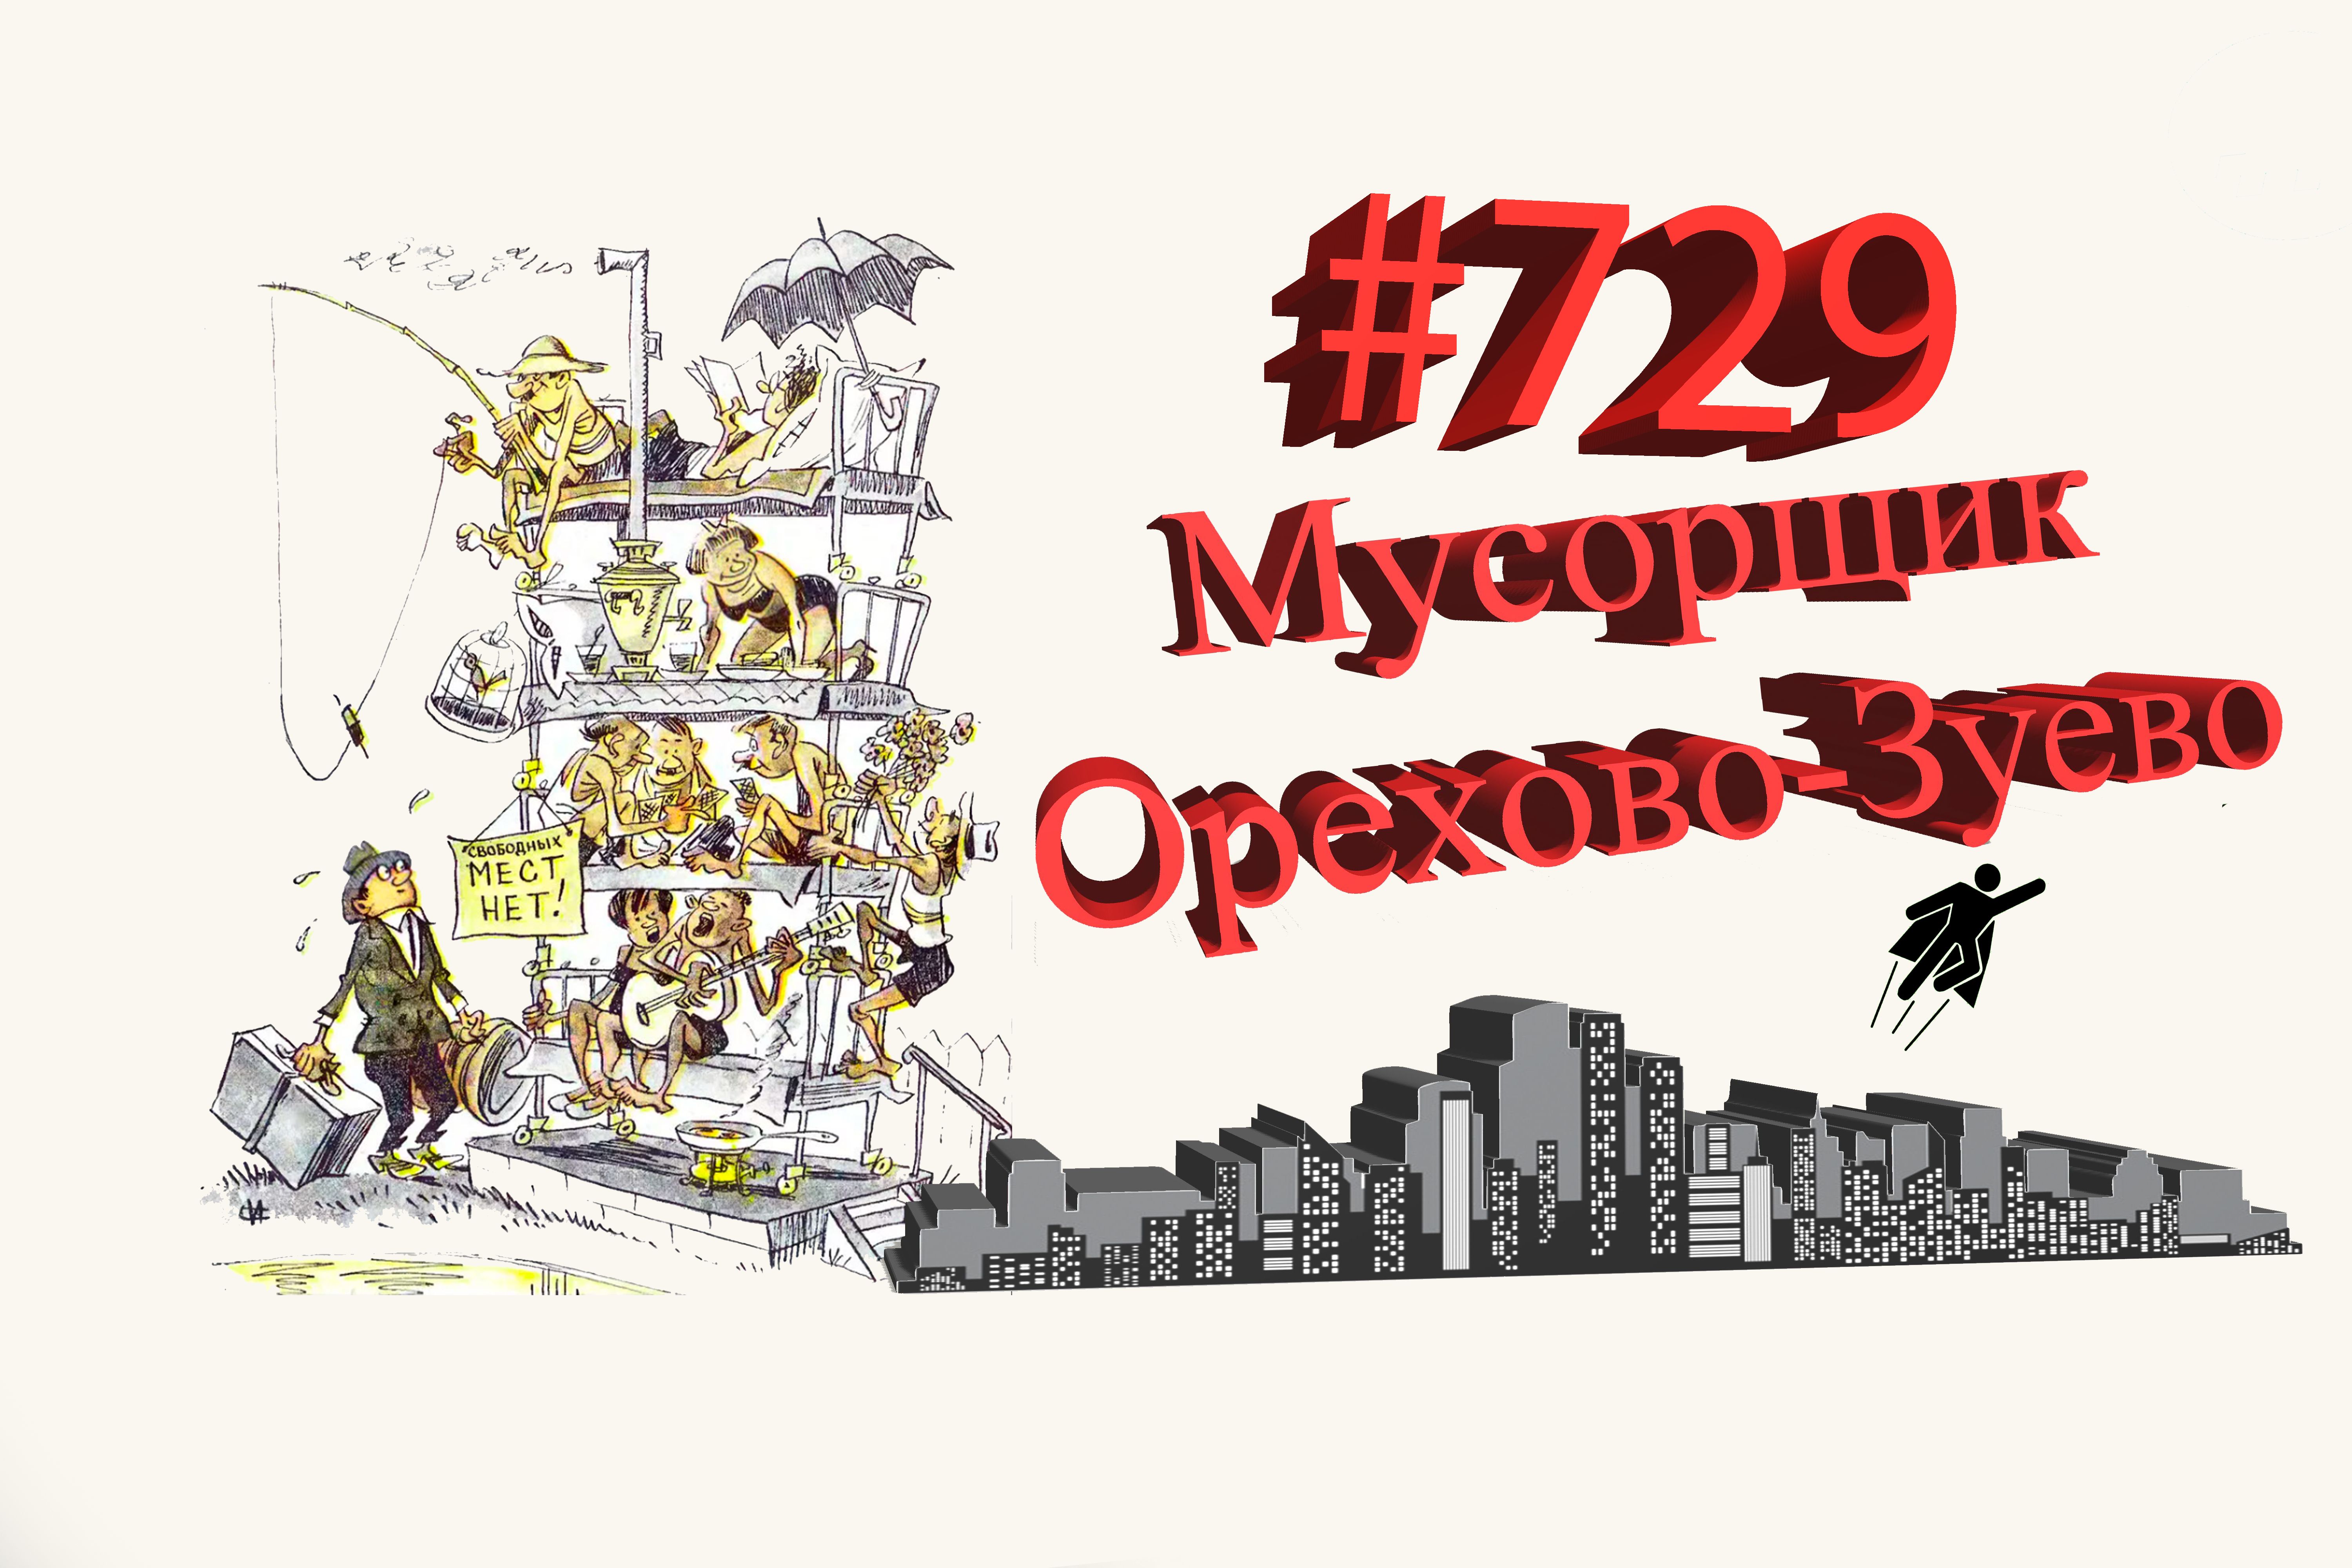 Подмосковье сегодня #729 Орехово-Зуево